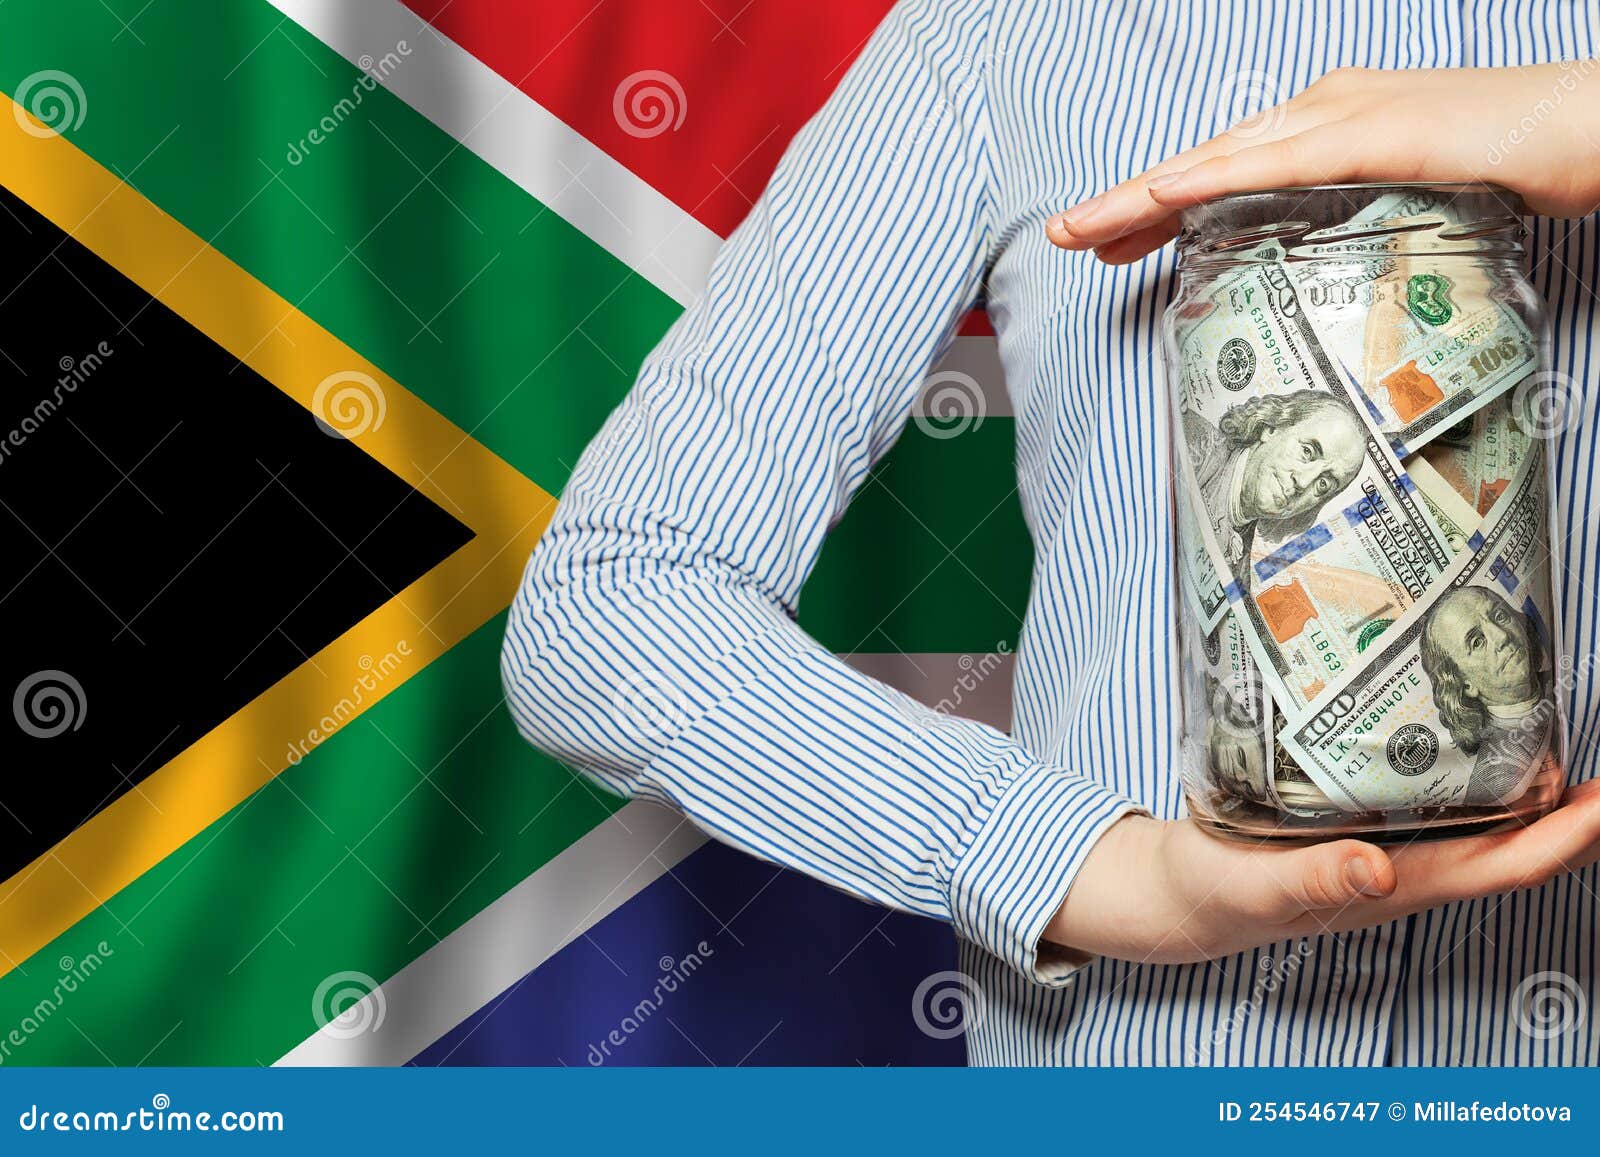 南非洲的货币 库存图片. 图片 包括有 兰特, 闹事, 硬币, 贸易, 财务, 货币, 采购, 工资, 出售 - 67337135